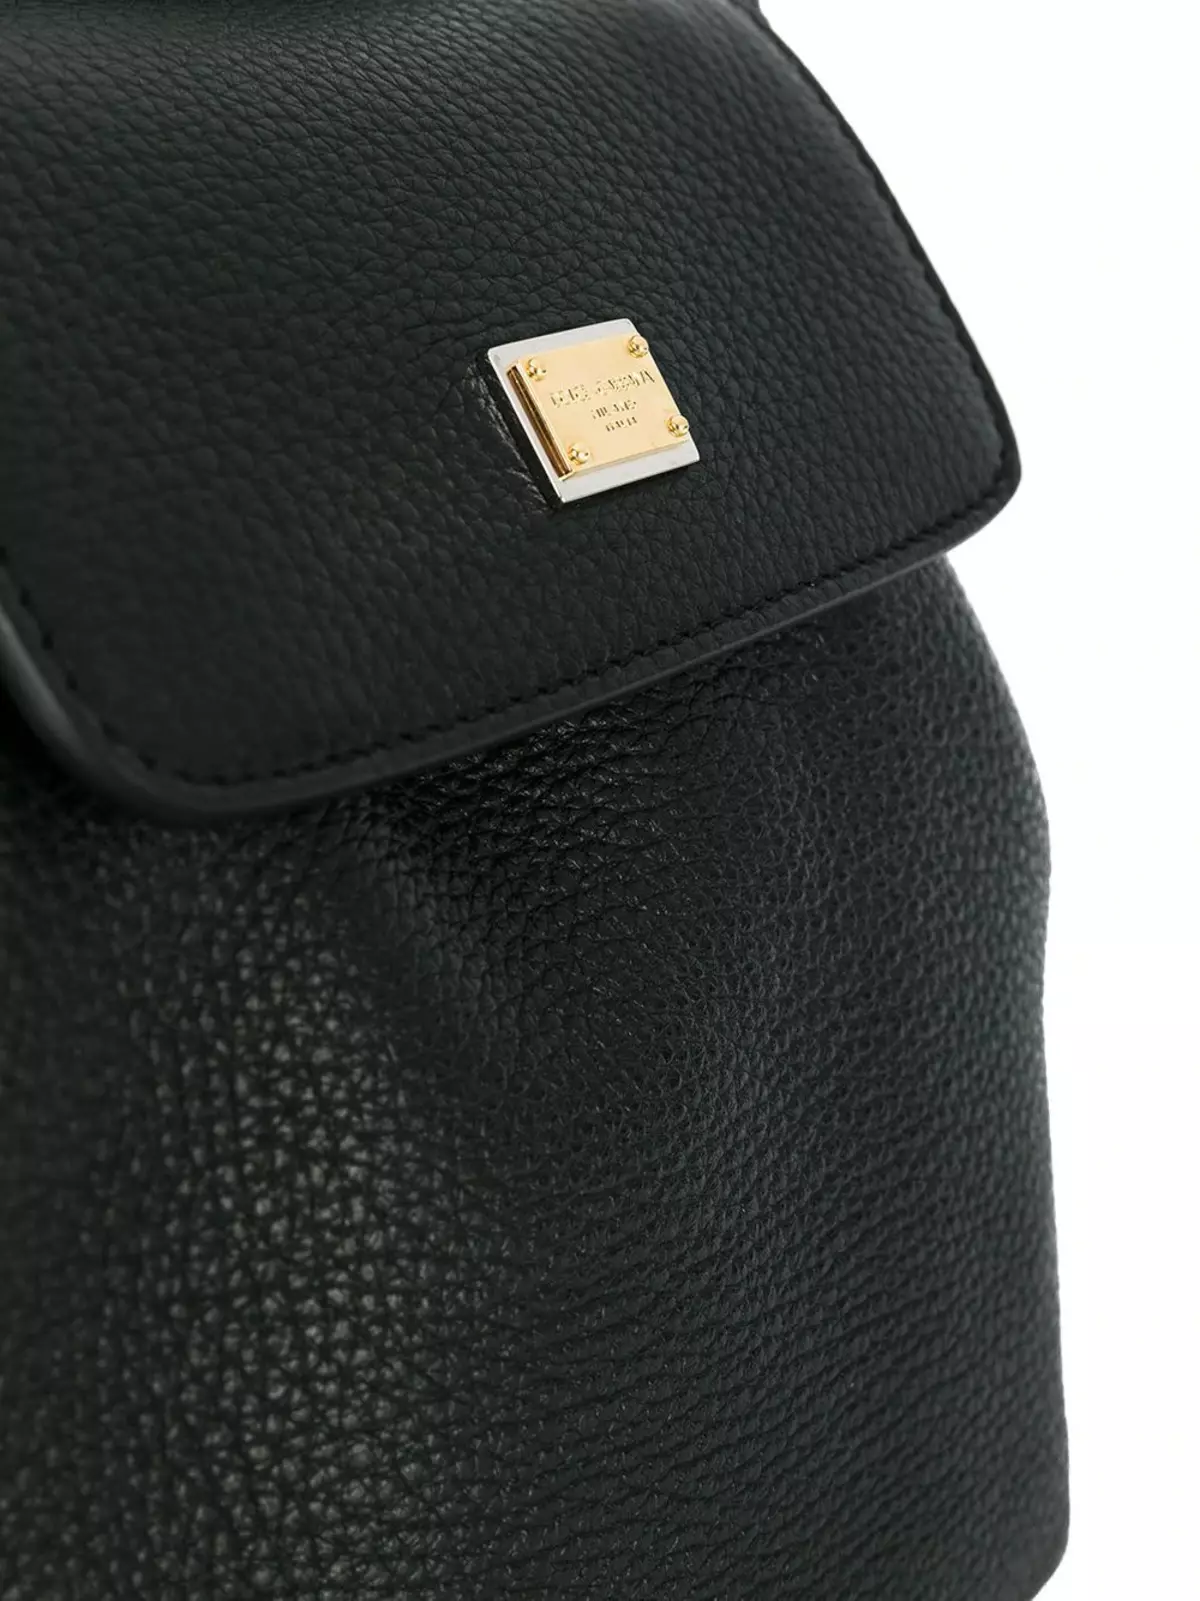 Рюкзаки Dolce & Gabbana: жіночі і чоловічі, чорні і червоні, шкіряні рюкзаки-сумки та інші моделі. Як відрізнити оригінал від копії? 2559_21